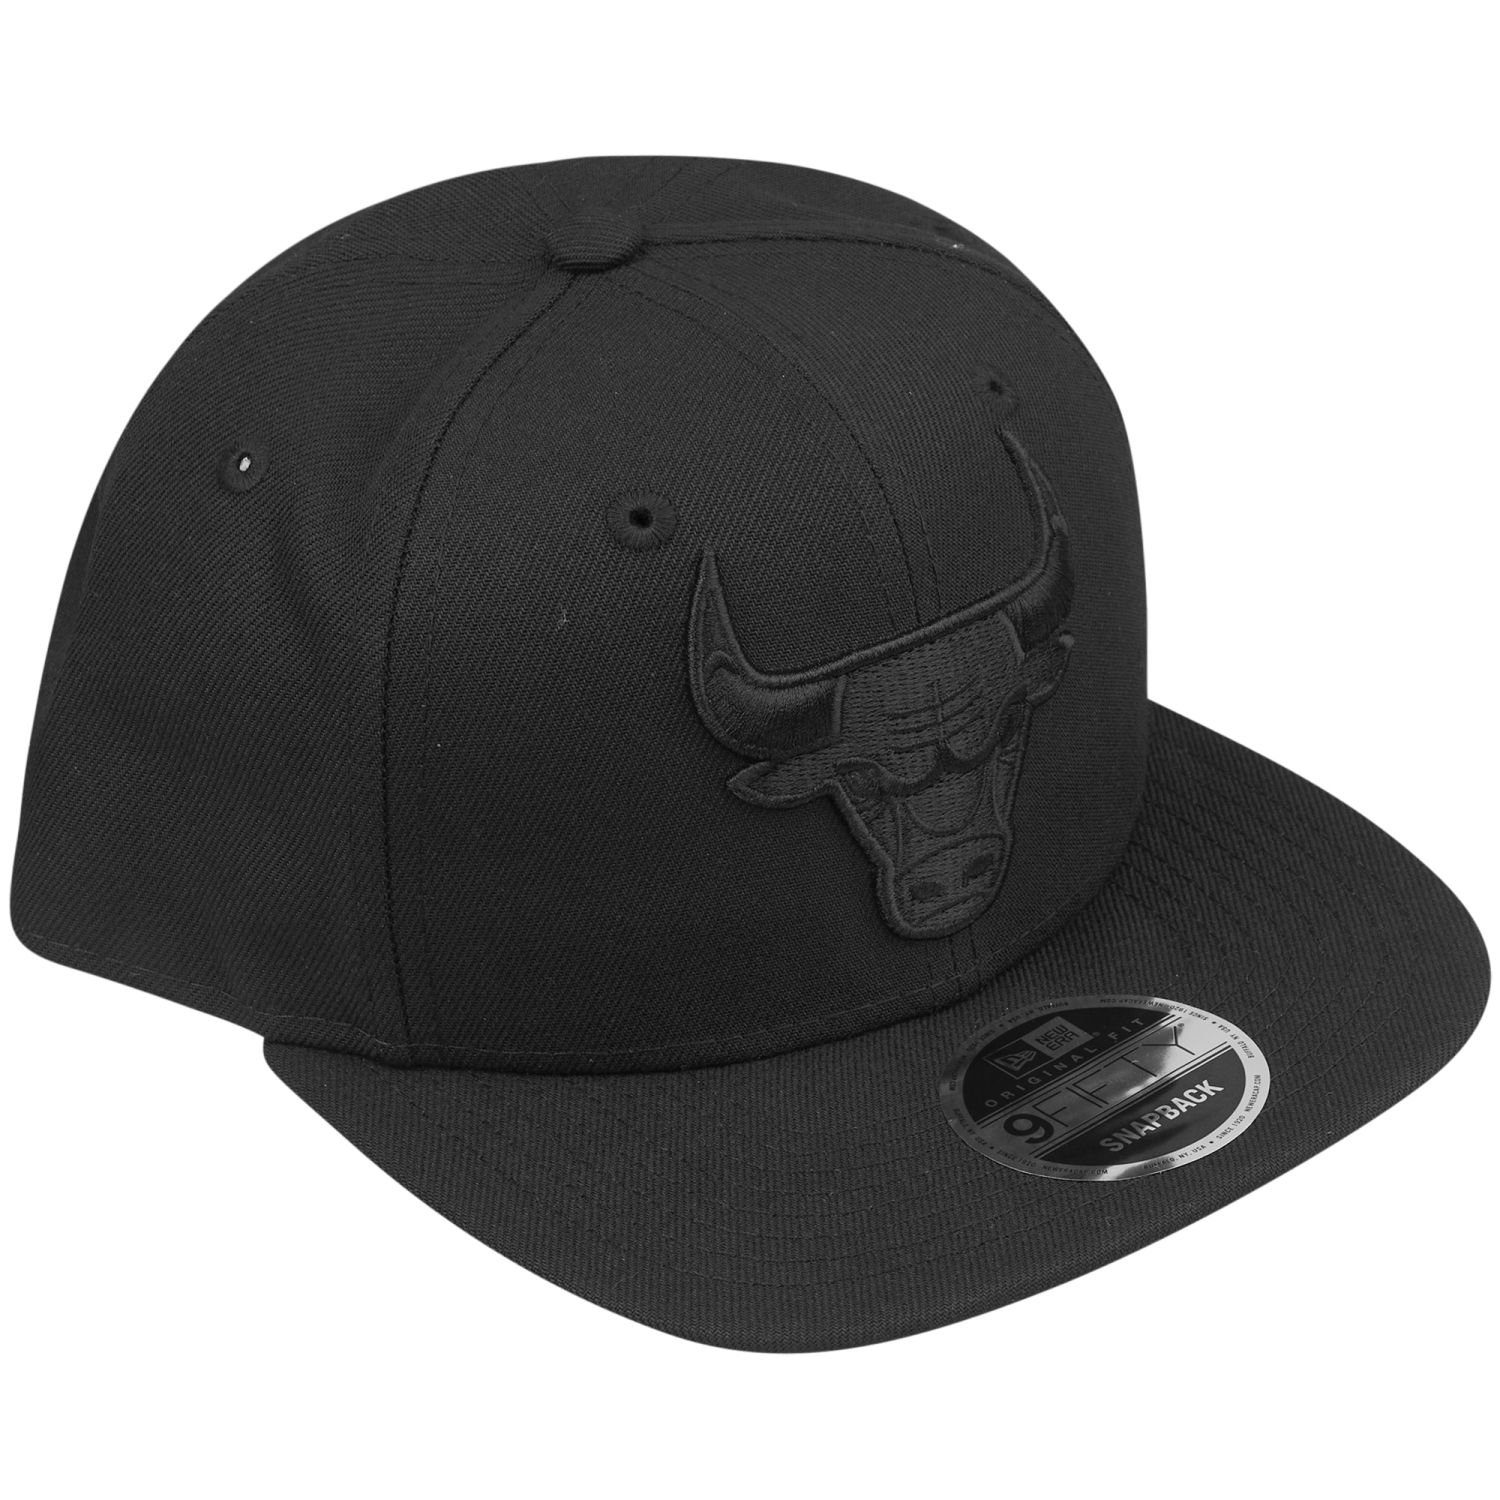 New Era Snapback 9Fifty Cap Original Bulls Chicago